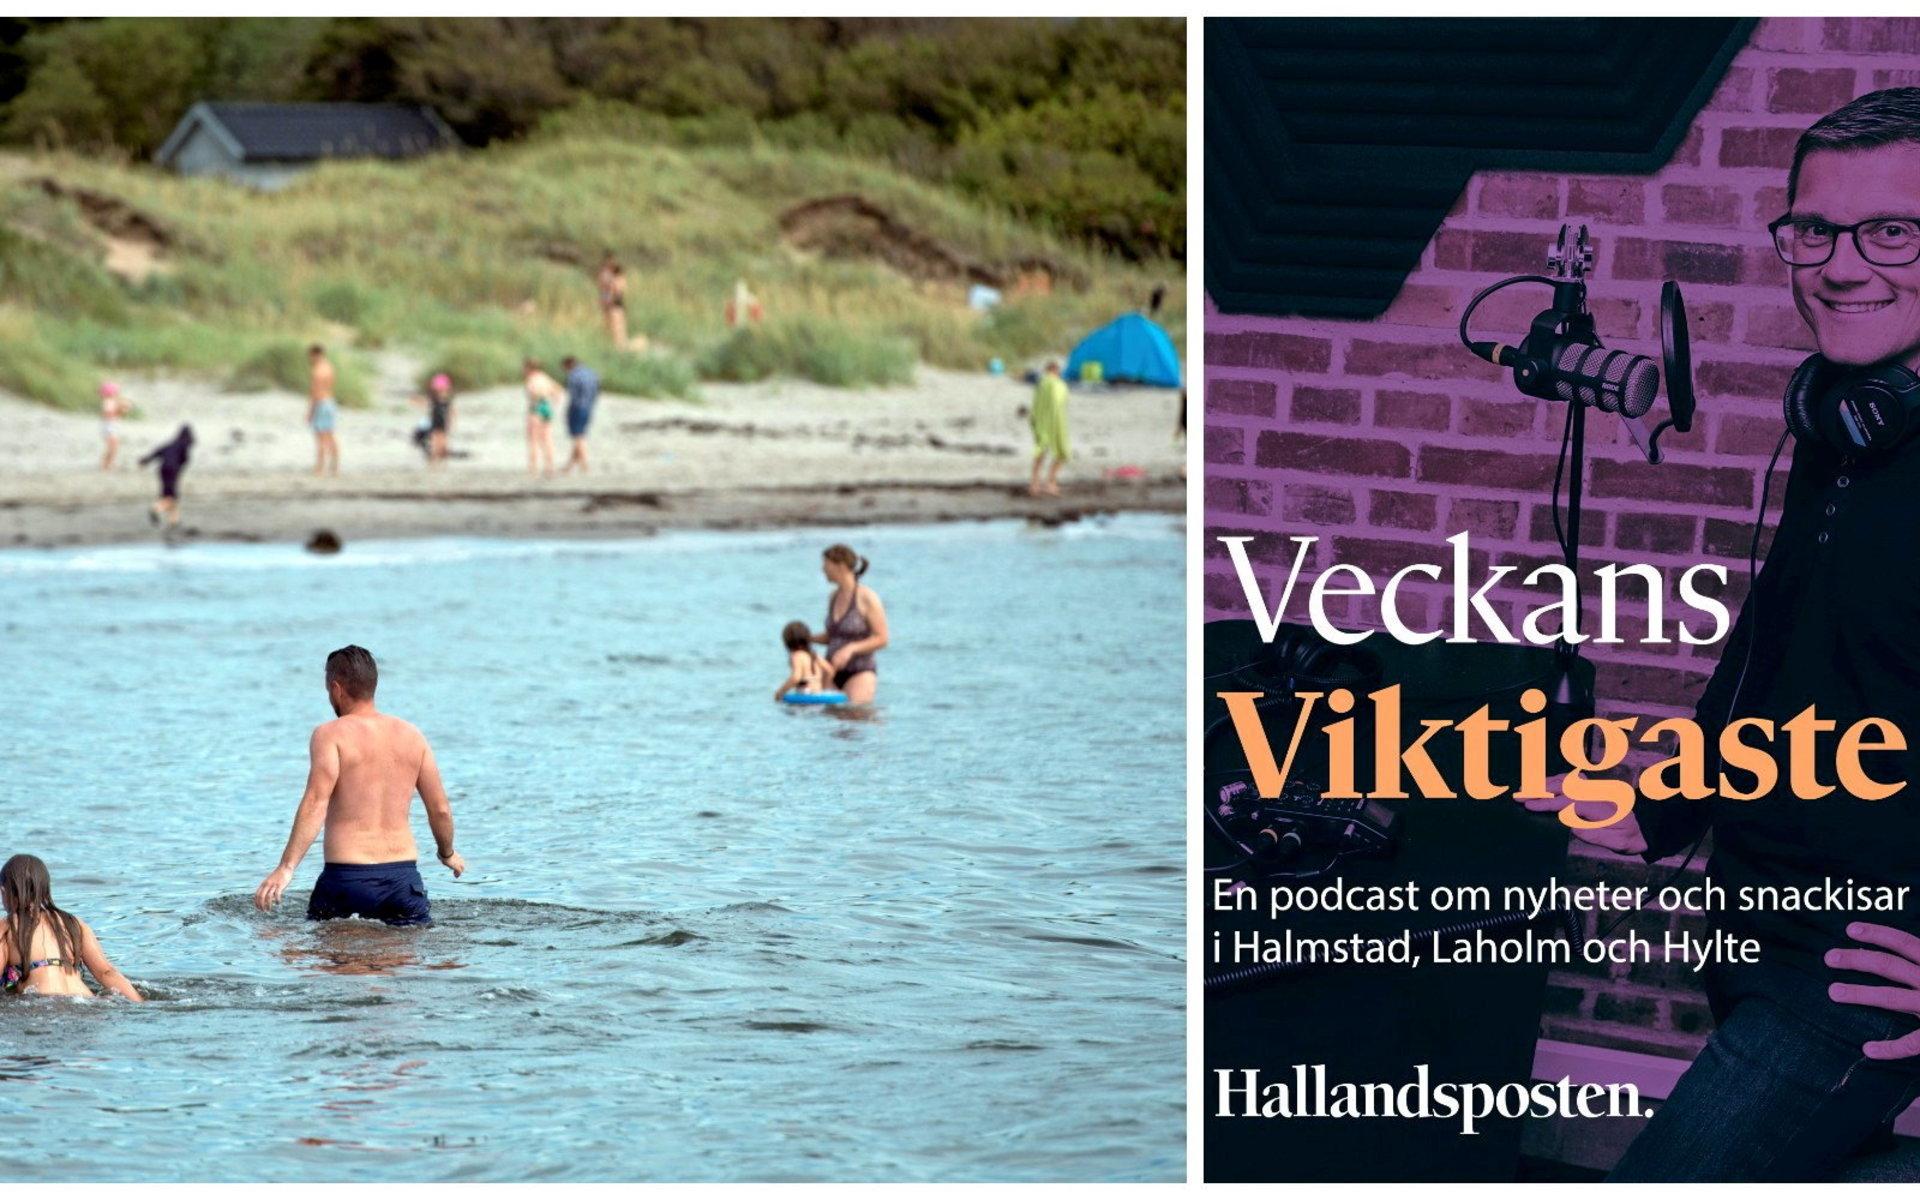 Avsnitt 34 av podden Veckans viktigaste handlar om badplatser runt om i Halmstad.